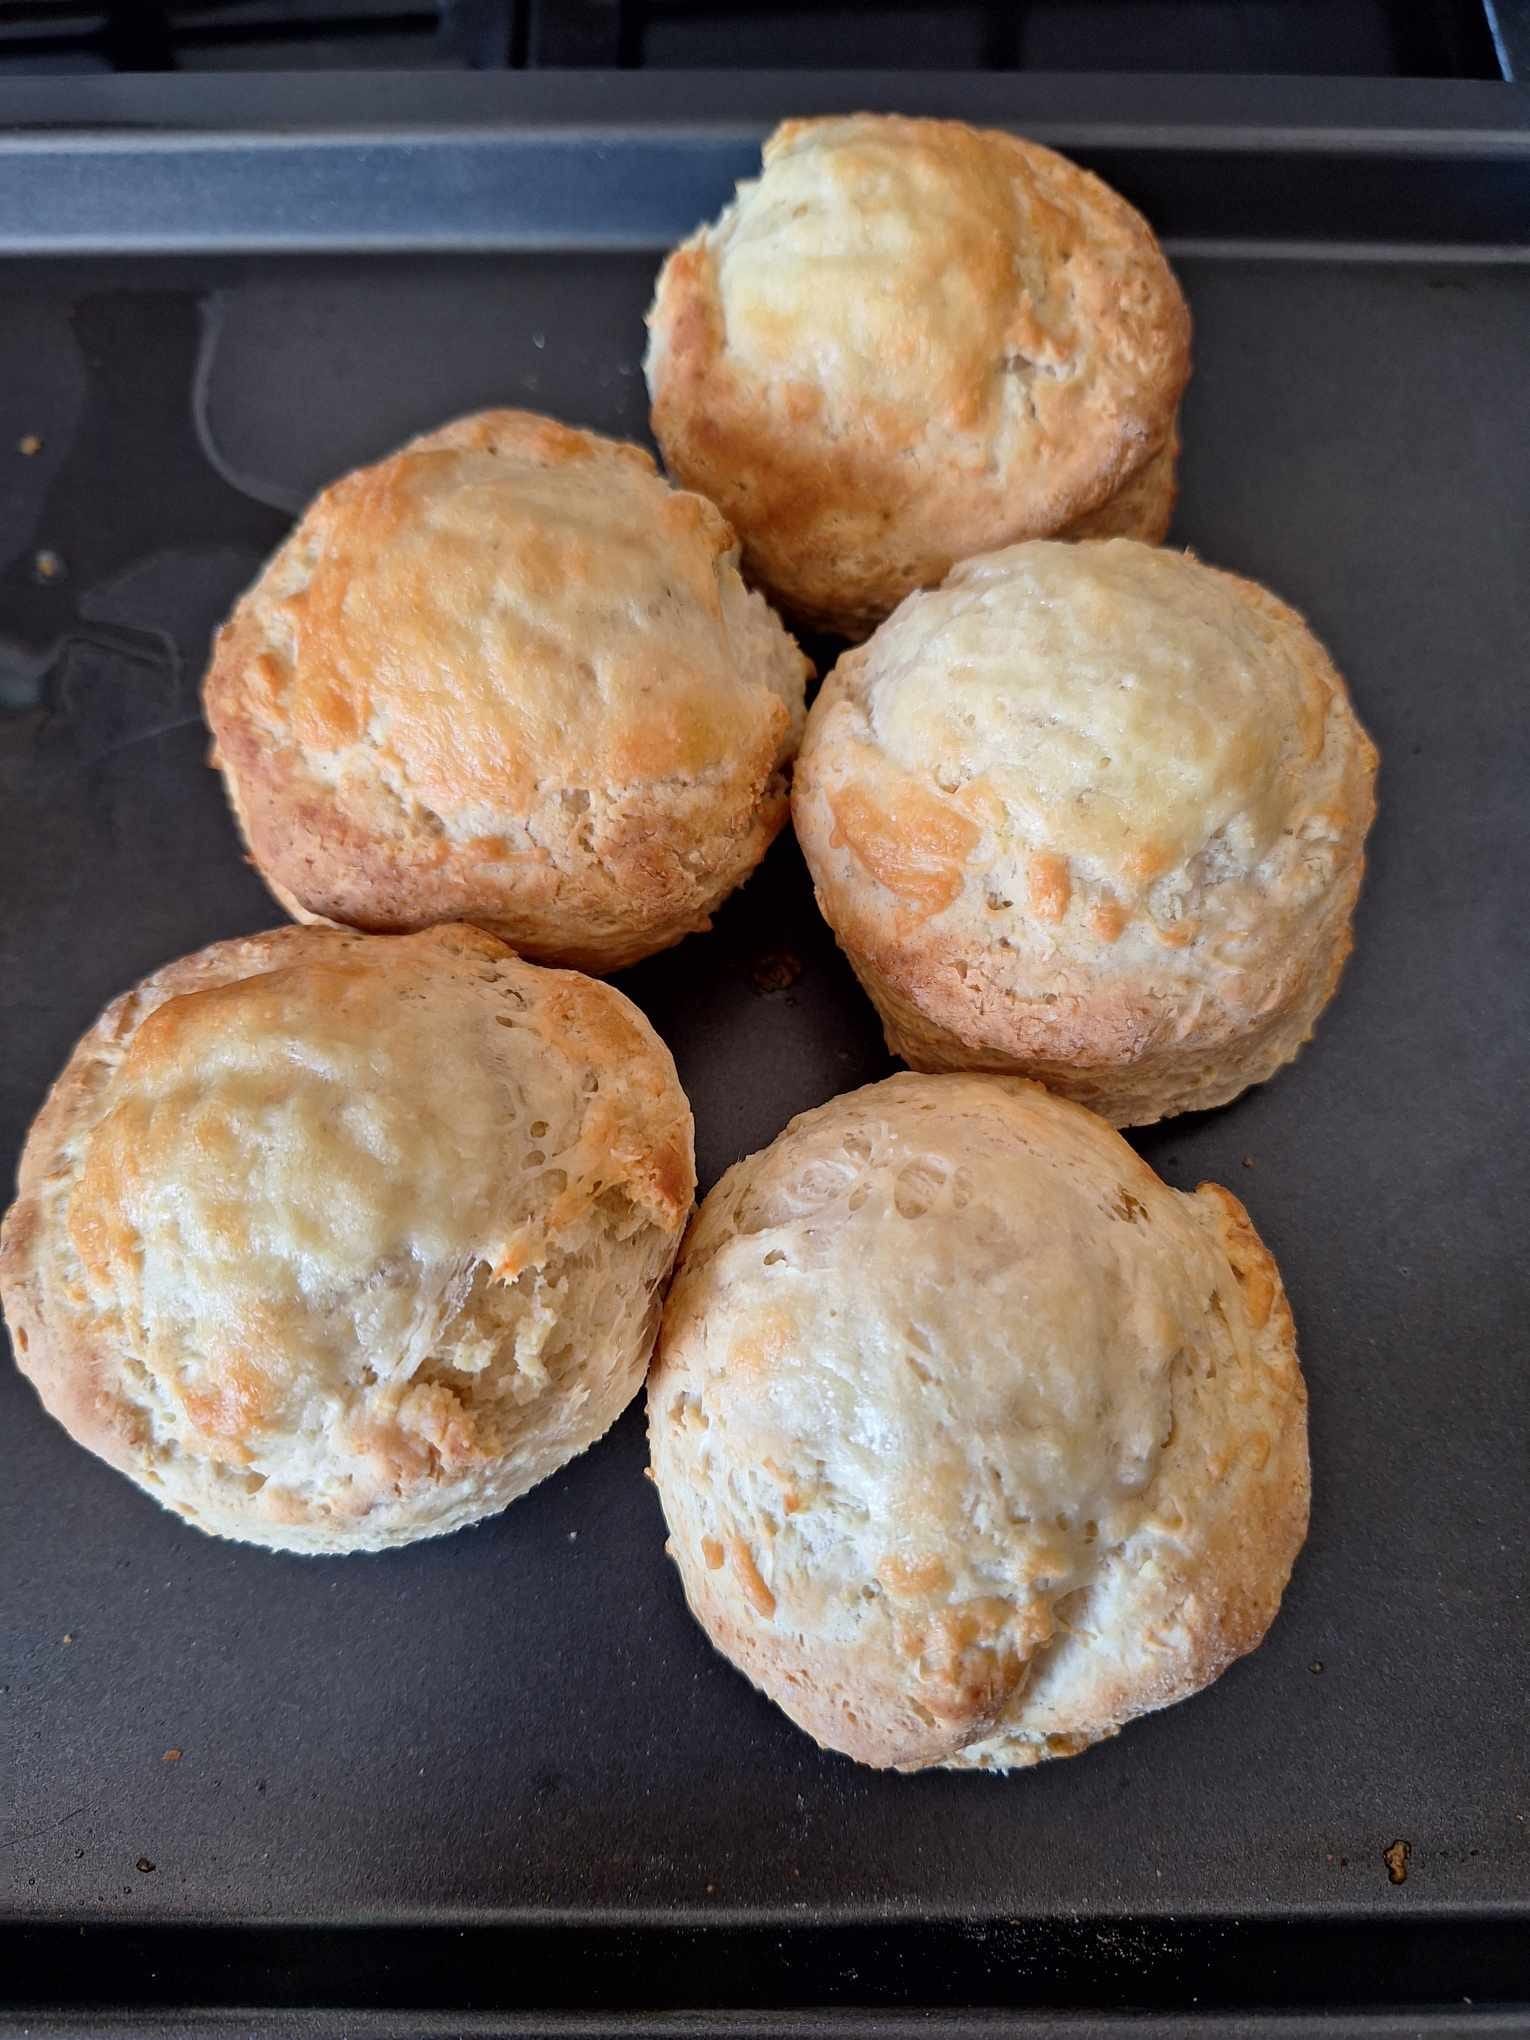 Cheesy scones arranged on a baking tray